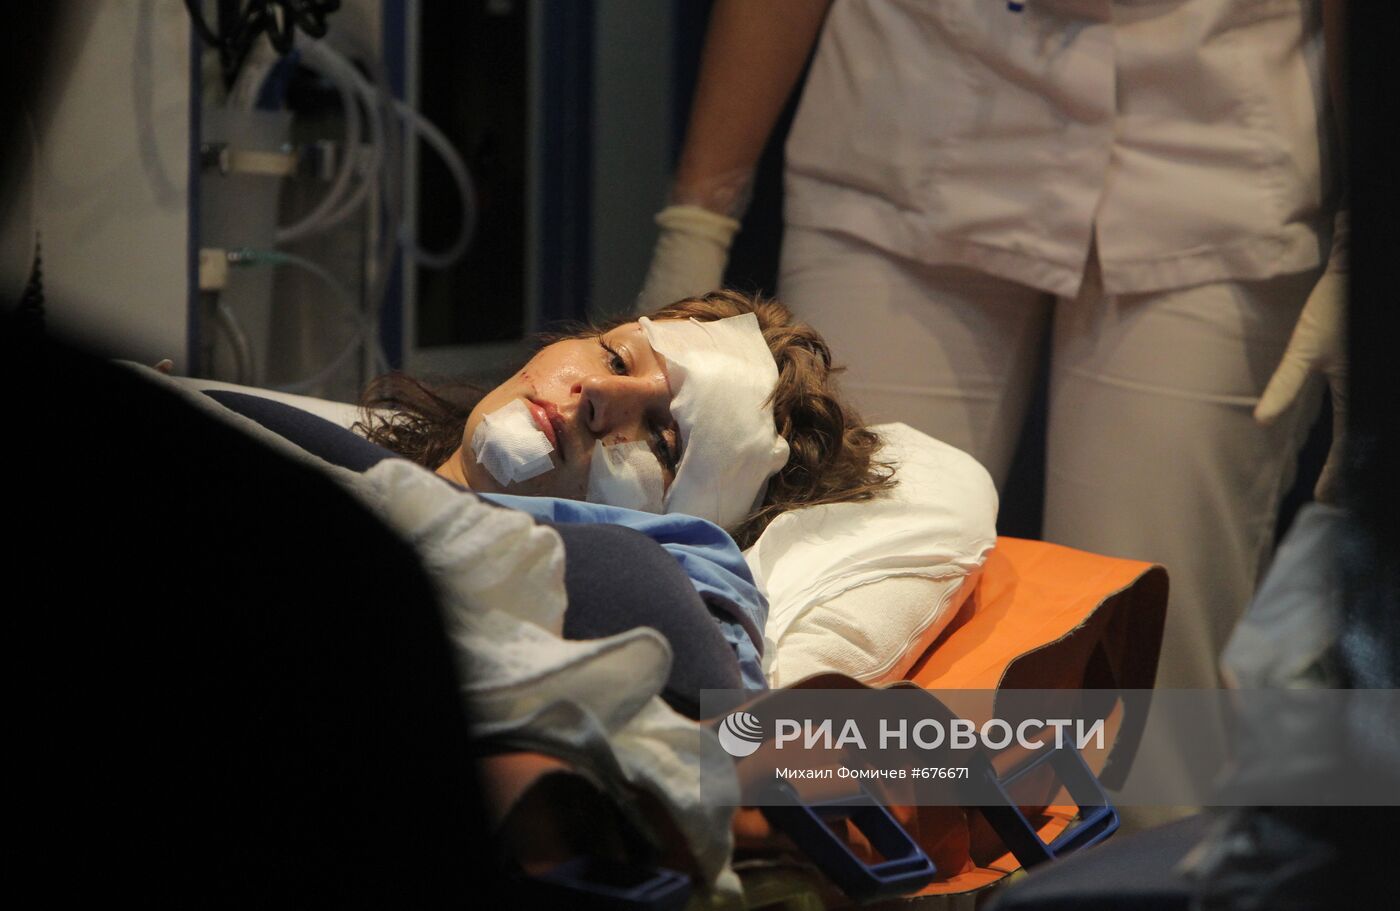 Гражданка России, пострадавшая в результате ДТП в Анталье